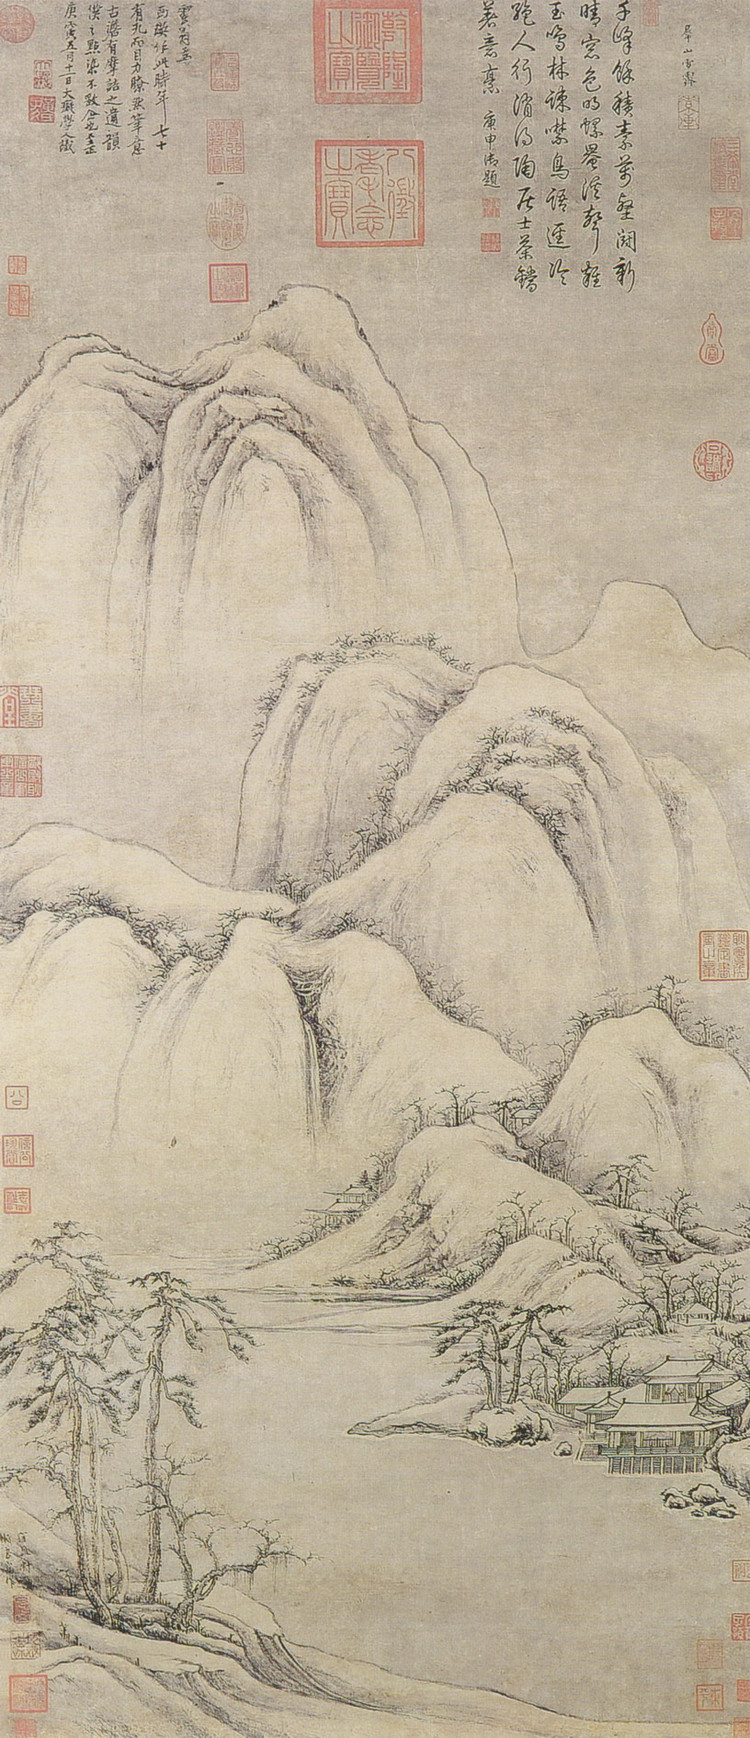 Image of Cao Zhibai